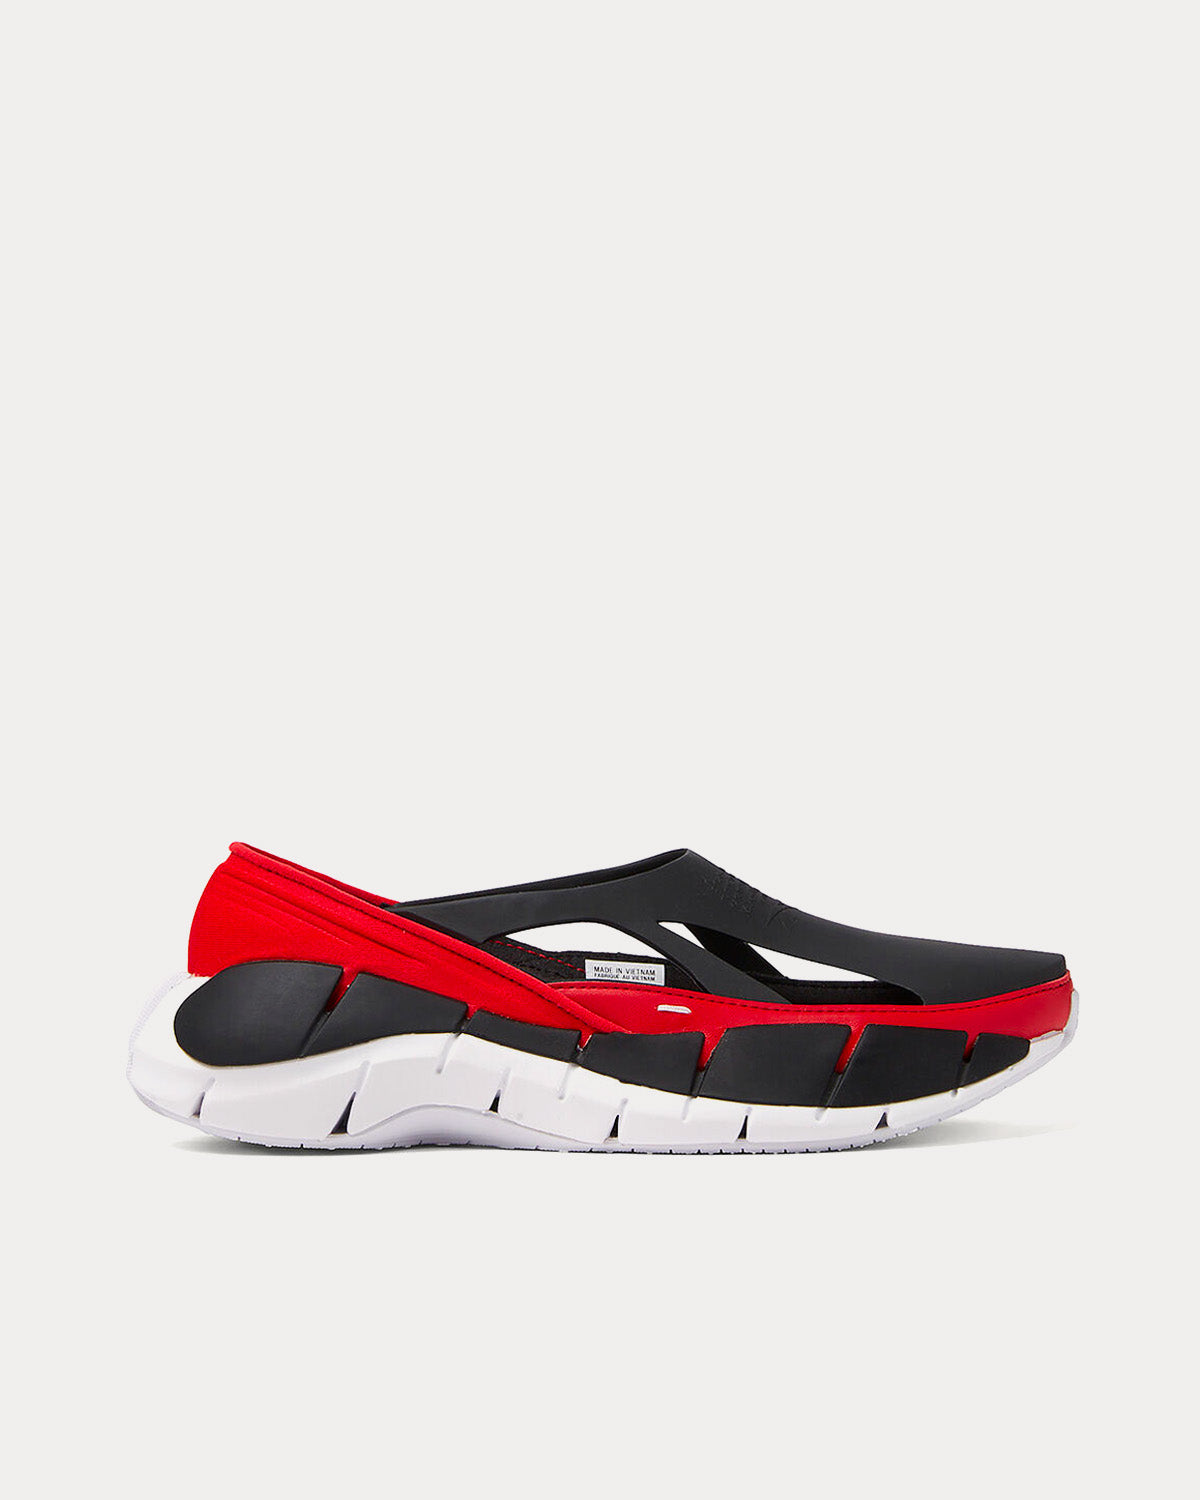 Reebok X Maison Margiela - Tier 1 Croafer Black / Red Slip On Sneakers